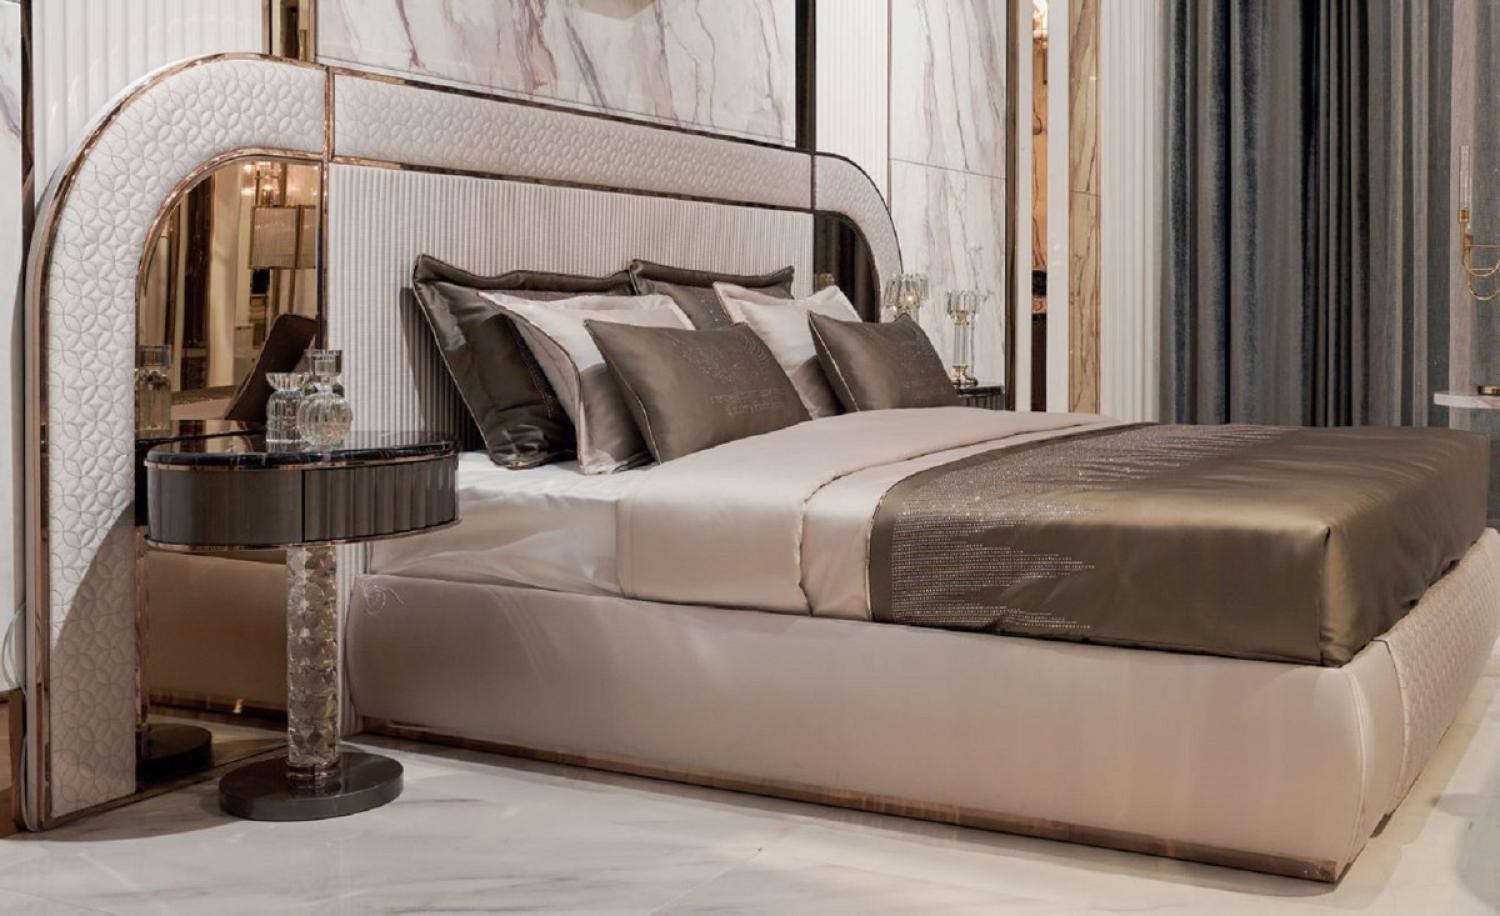 Casa Padrino Luxus Art Deco Doppelbett Grau / Kupfer 350 x 209,5 x H. 140 cm - Edles Massivholz Bett mit verspiegeltem Kopfteil - Luxus Schlafzimmer Möbel - Hotel Möbel - Art Deco Möbel Bild 1